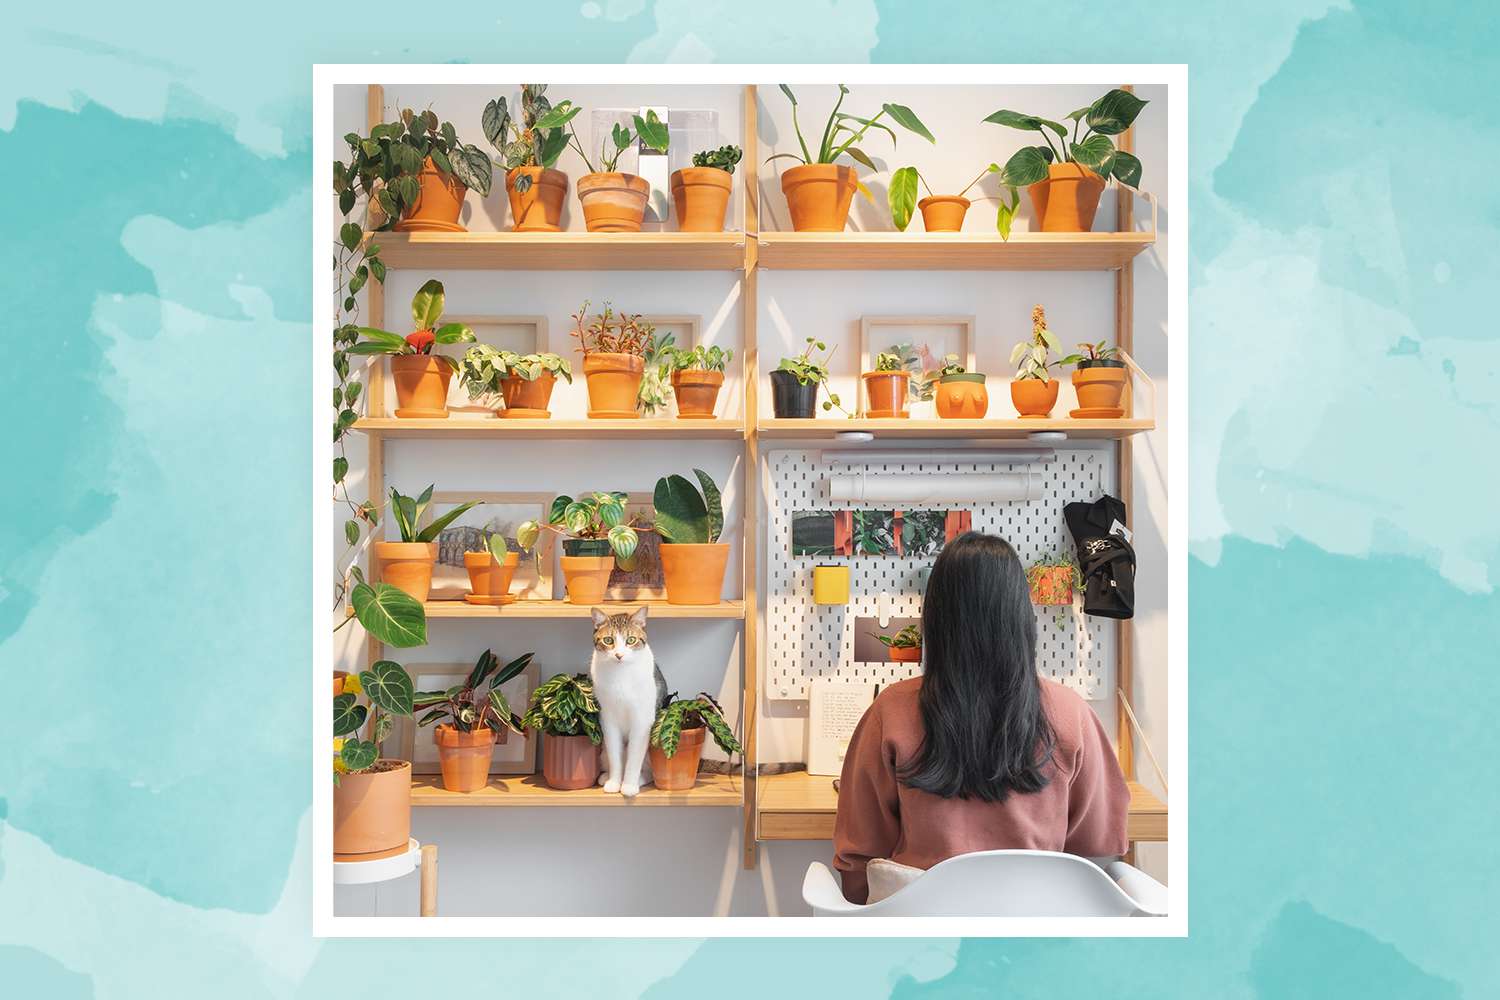 Vionna Wai, Gründerin von @FelineJungle, arbeitet in der Nähe ihrer Pflanzenwand in ihrem Arbeitsbereich zu Hause